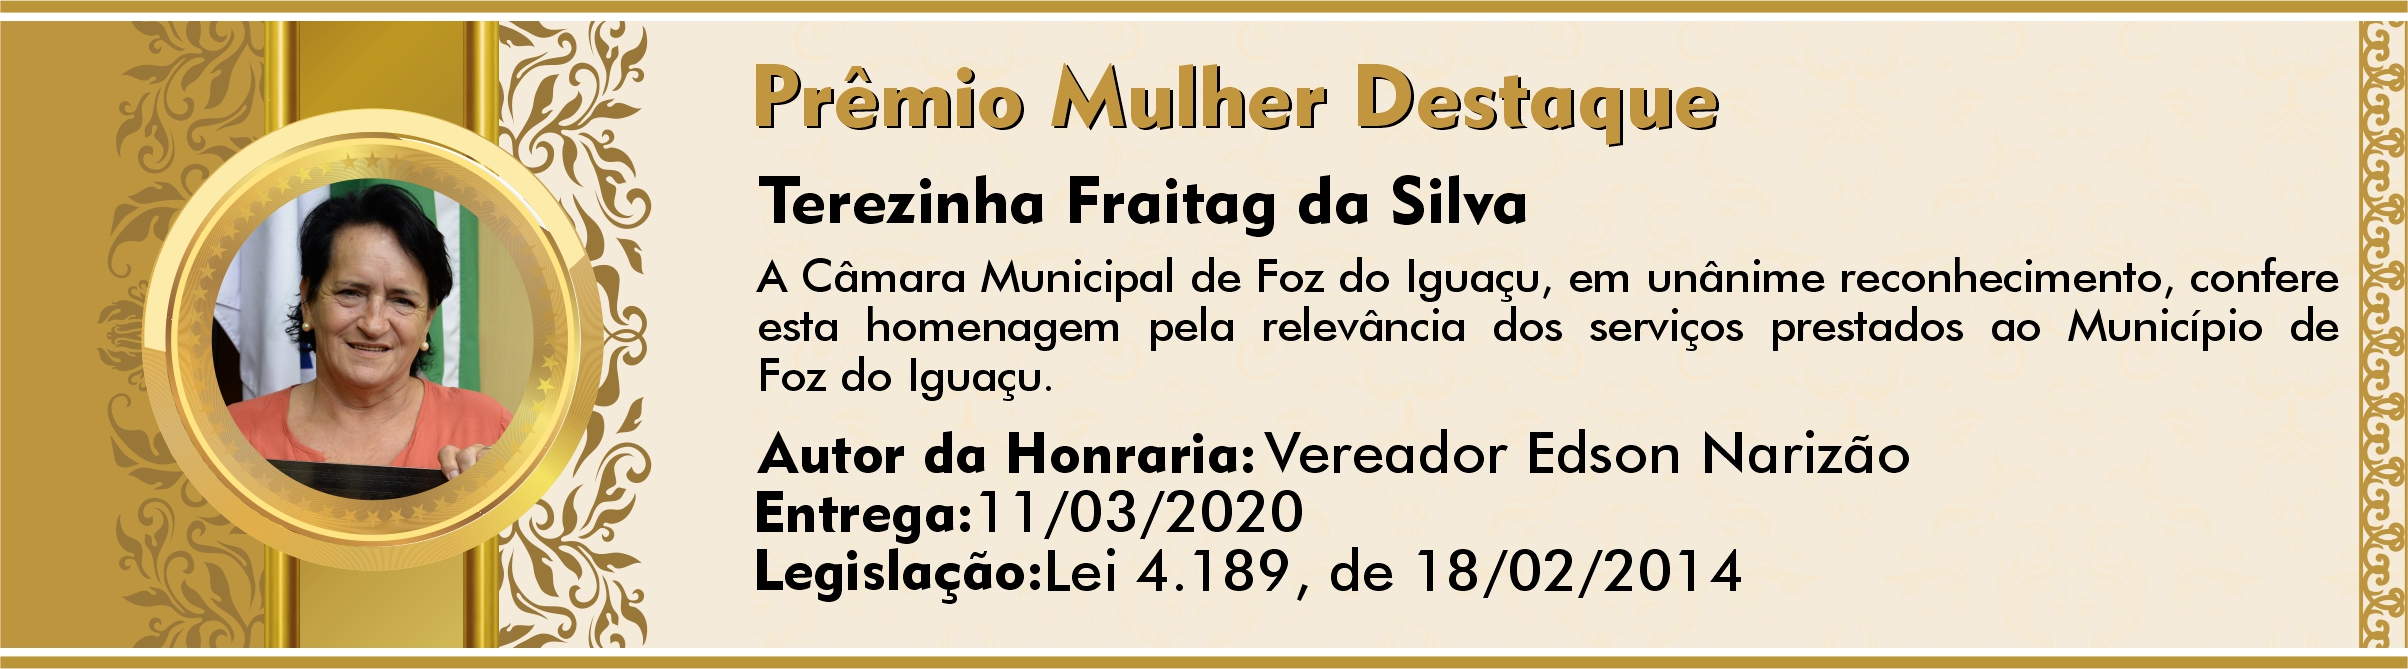 Terezinha Fraitag da Silva